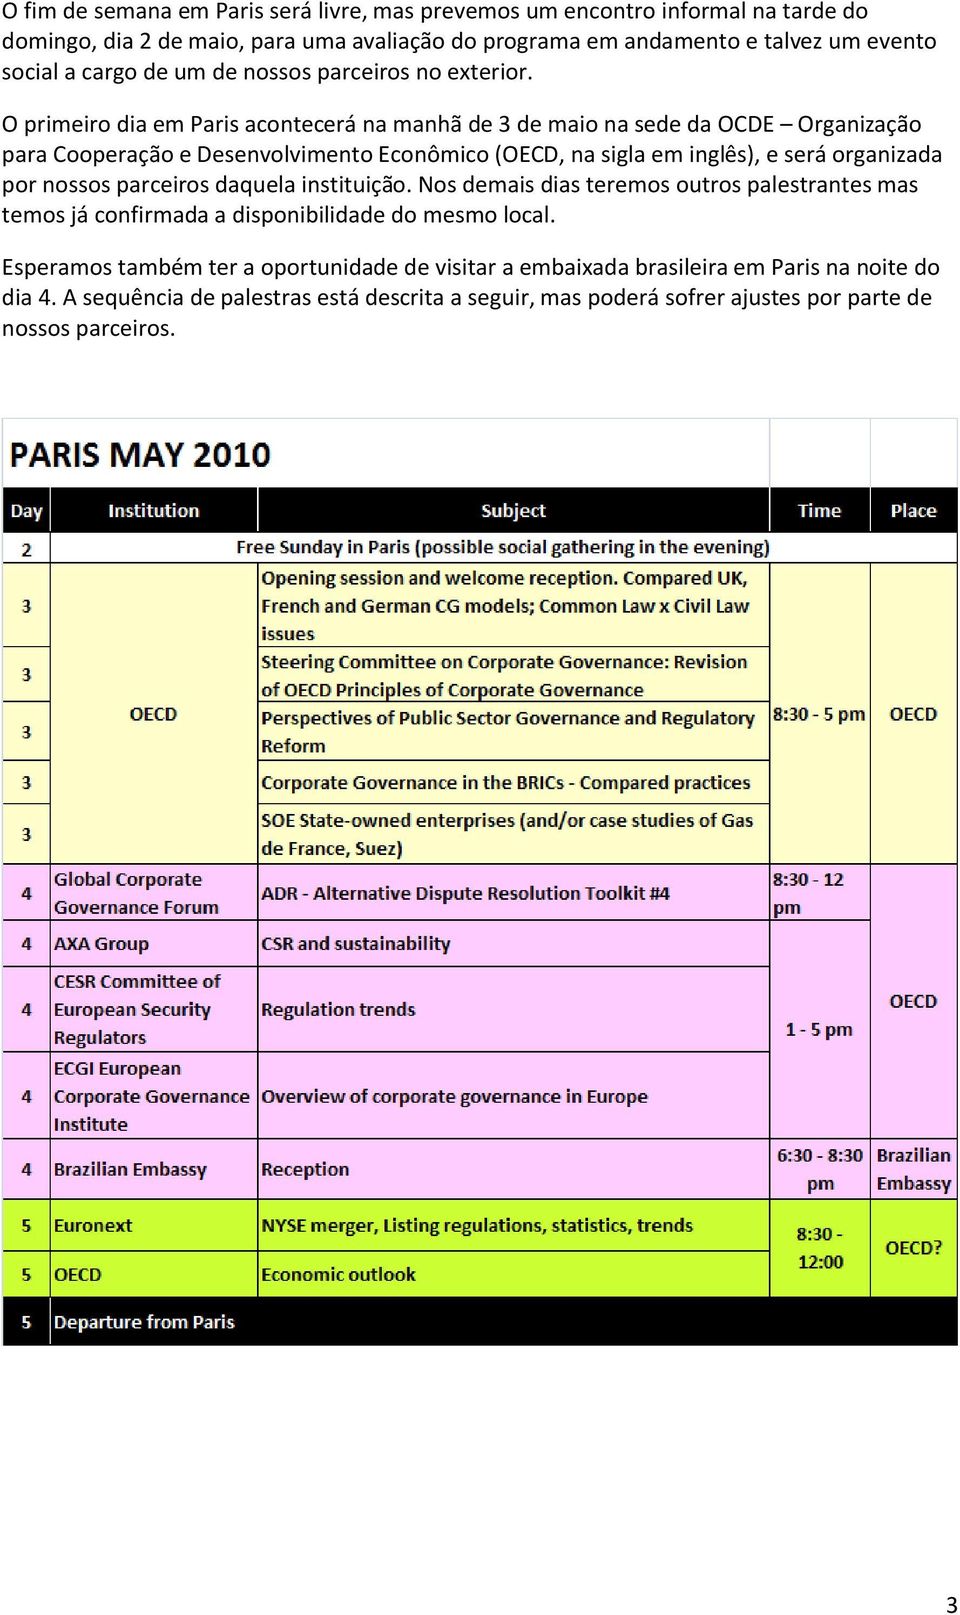 O primeiro dia em Paris acontecerá na manhã de 3 de maio na sede da OCDE Organização para Cooperação e Desenvolvimento Econômico (OECD, na sigla em inglês), e será organizada por nossos